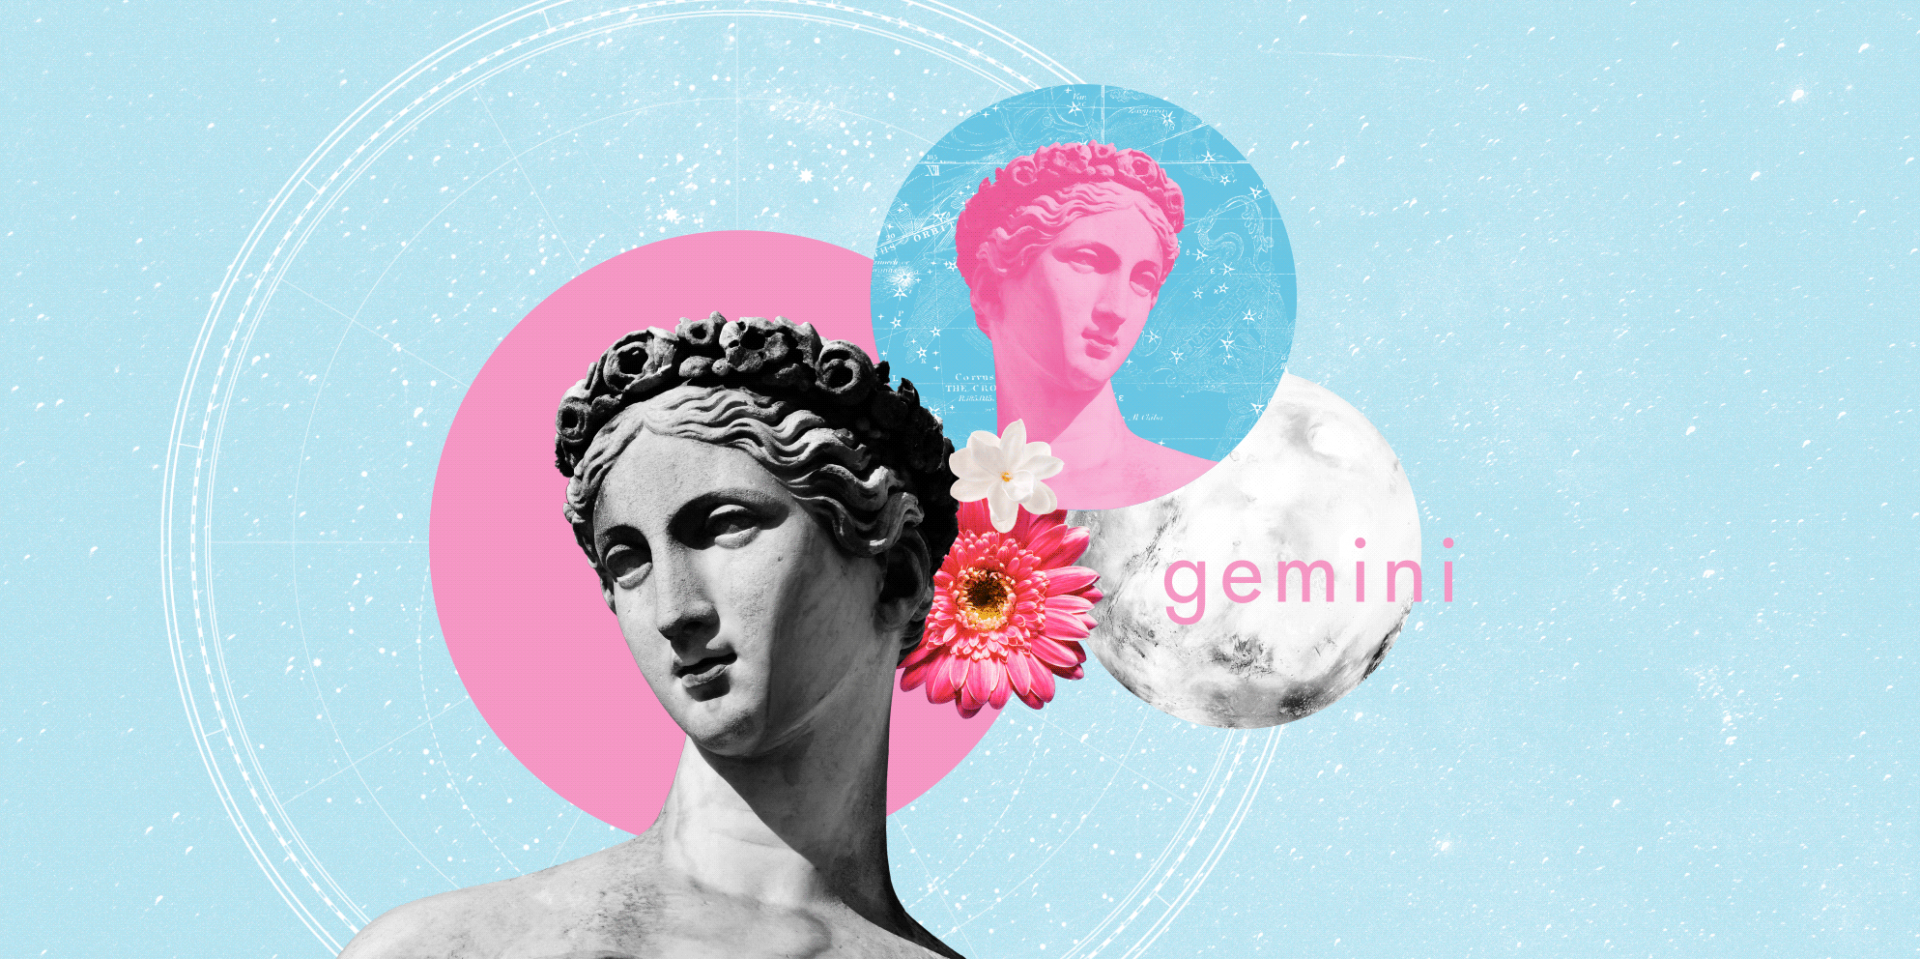 Gemini. gemini